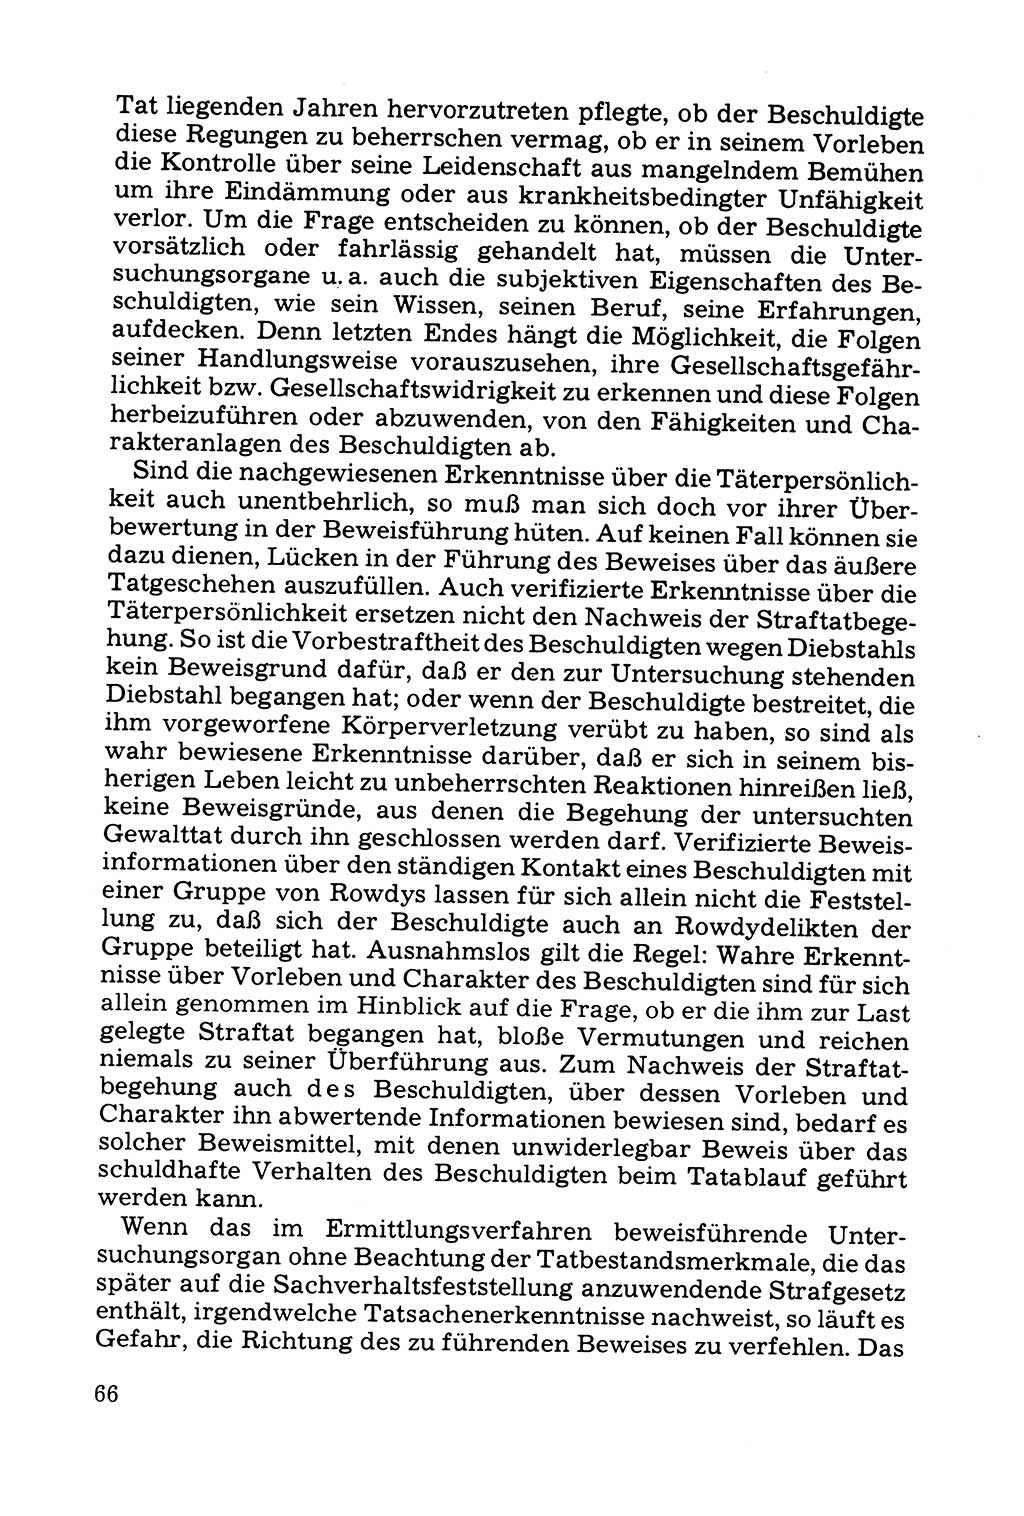 Grundfragen der Beweisführung im Ermittlungsverfahren [Deutsche Demokratische Republik (DDR)] 1980, Seite 66 (Bws.-Fhrg. EV DDR 1980, S. 66)